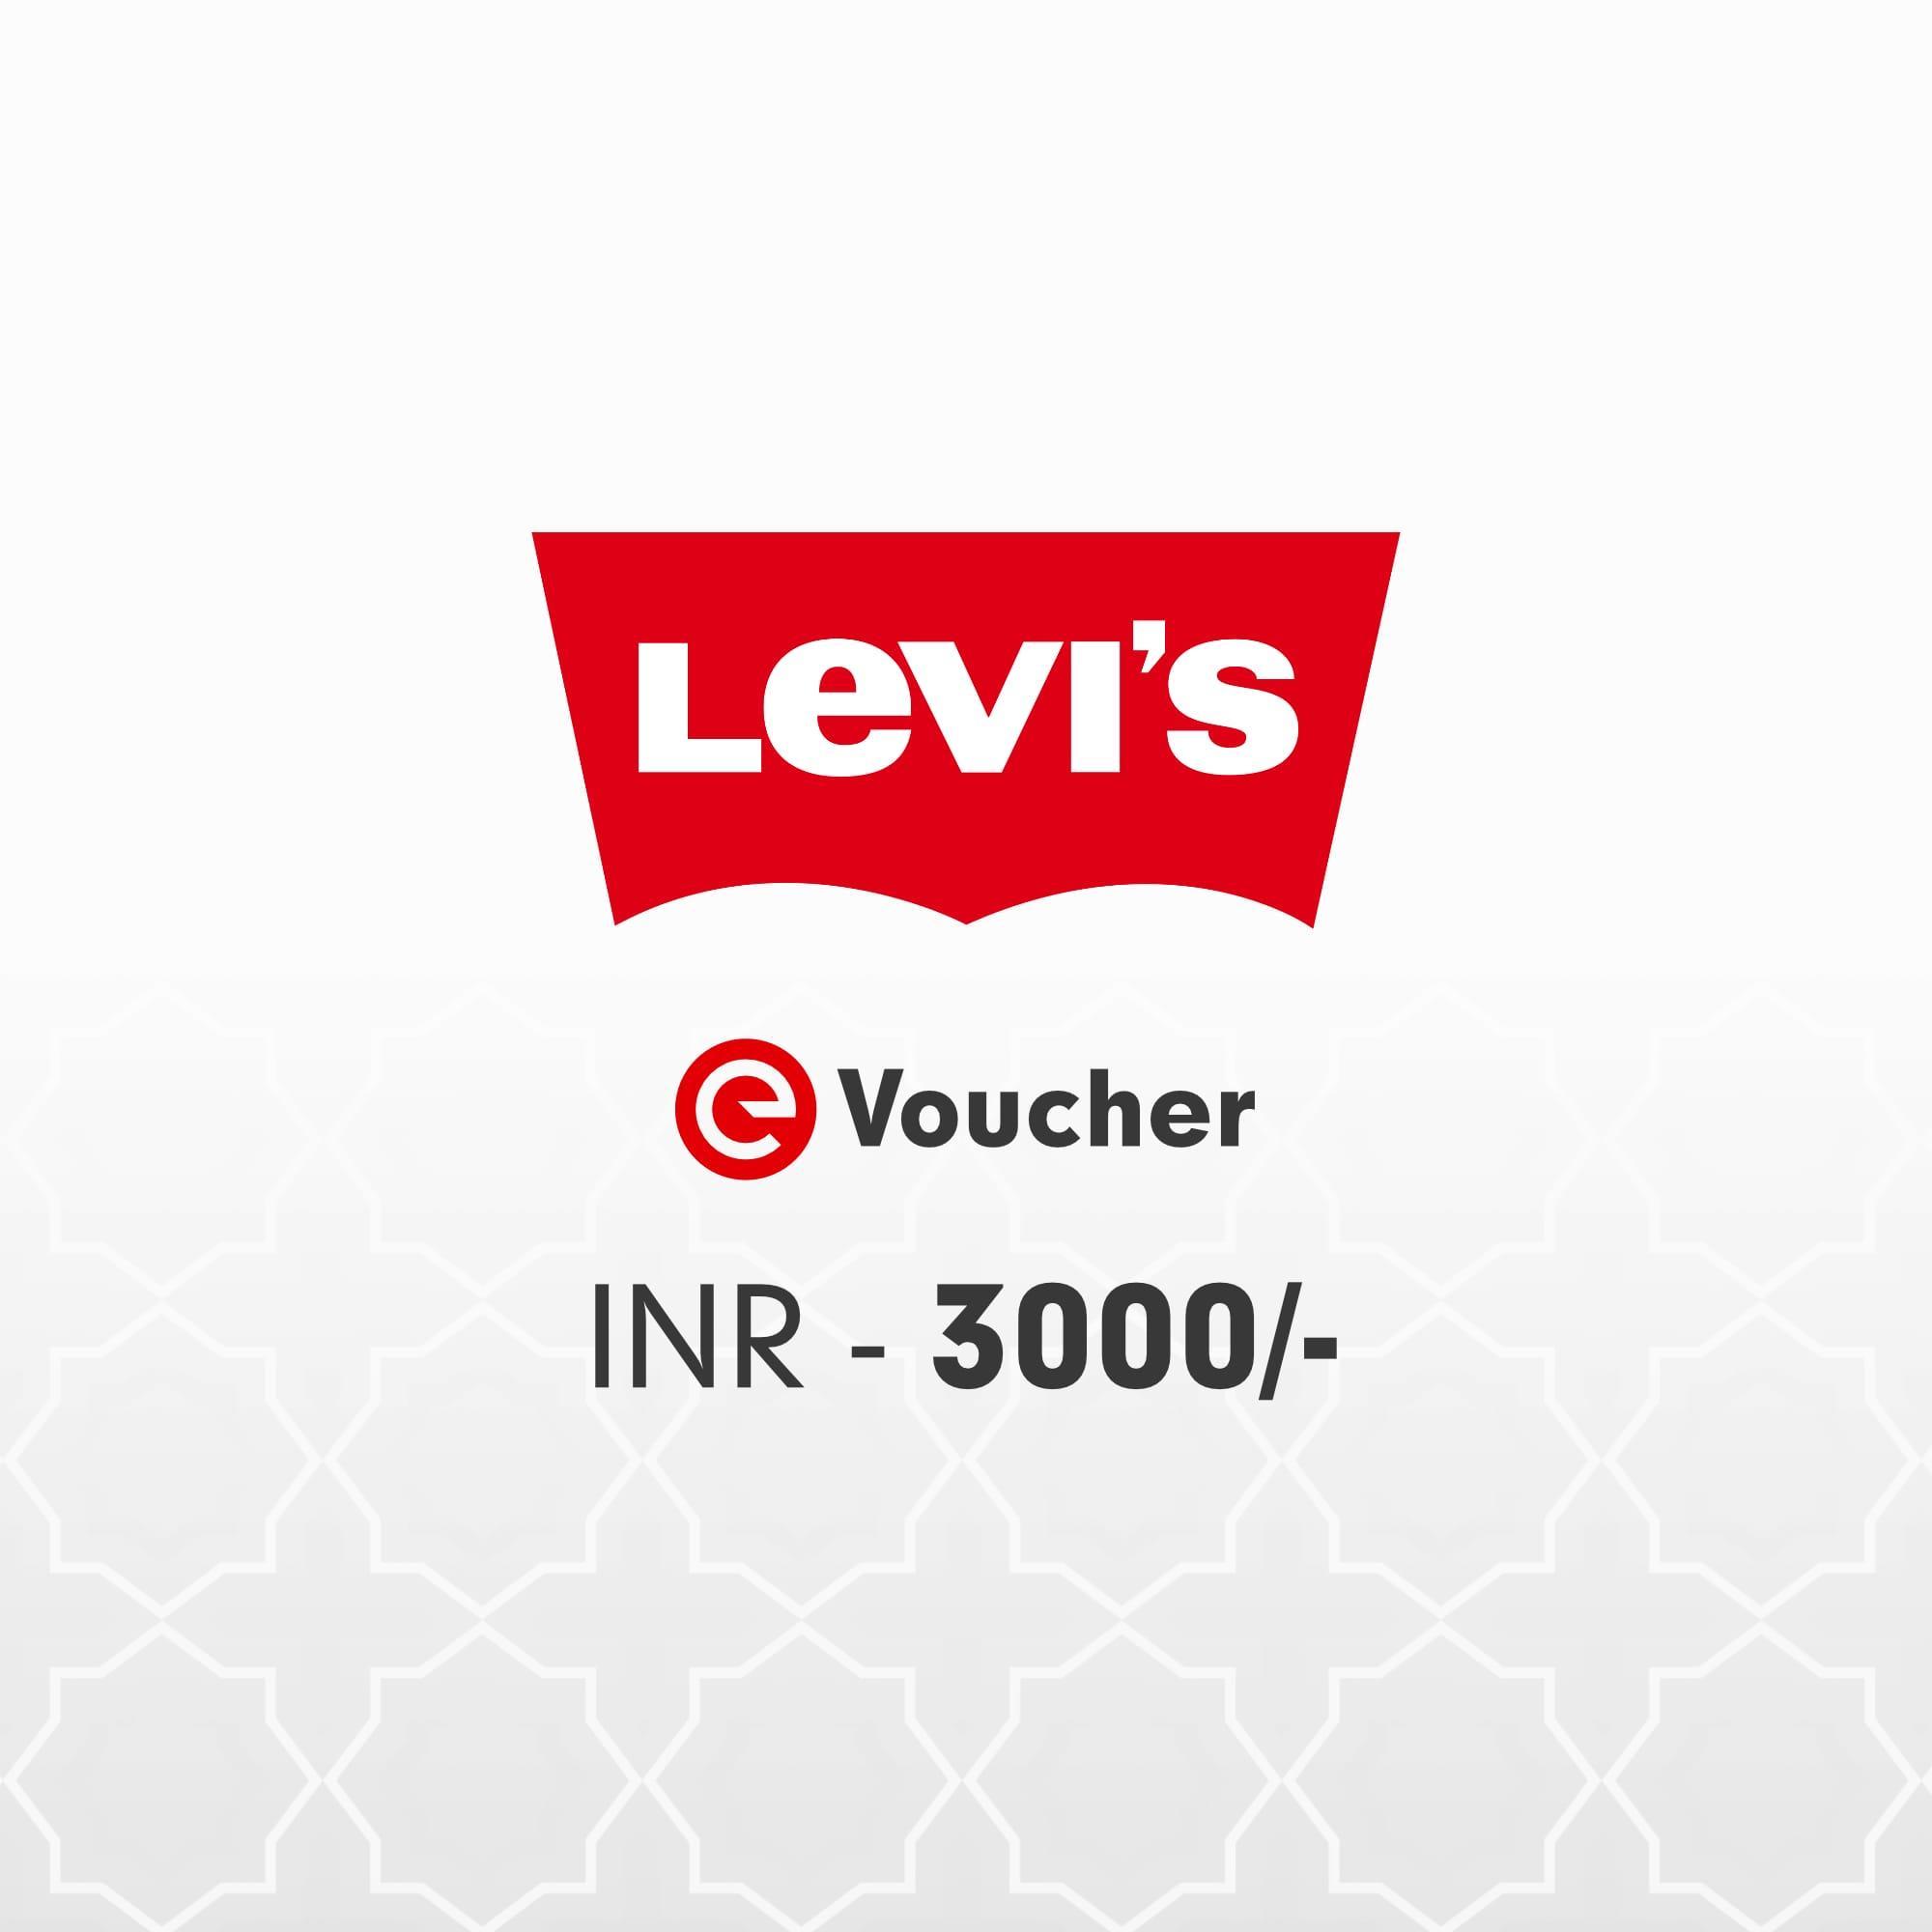 Levis E-Voucher Rs. 3000 | Levis Gift Cards